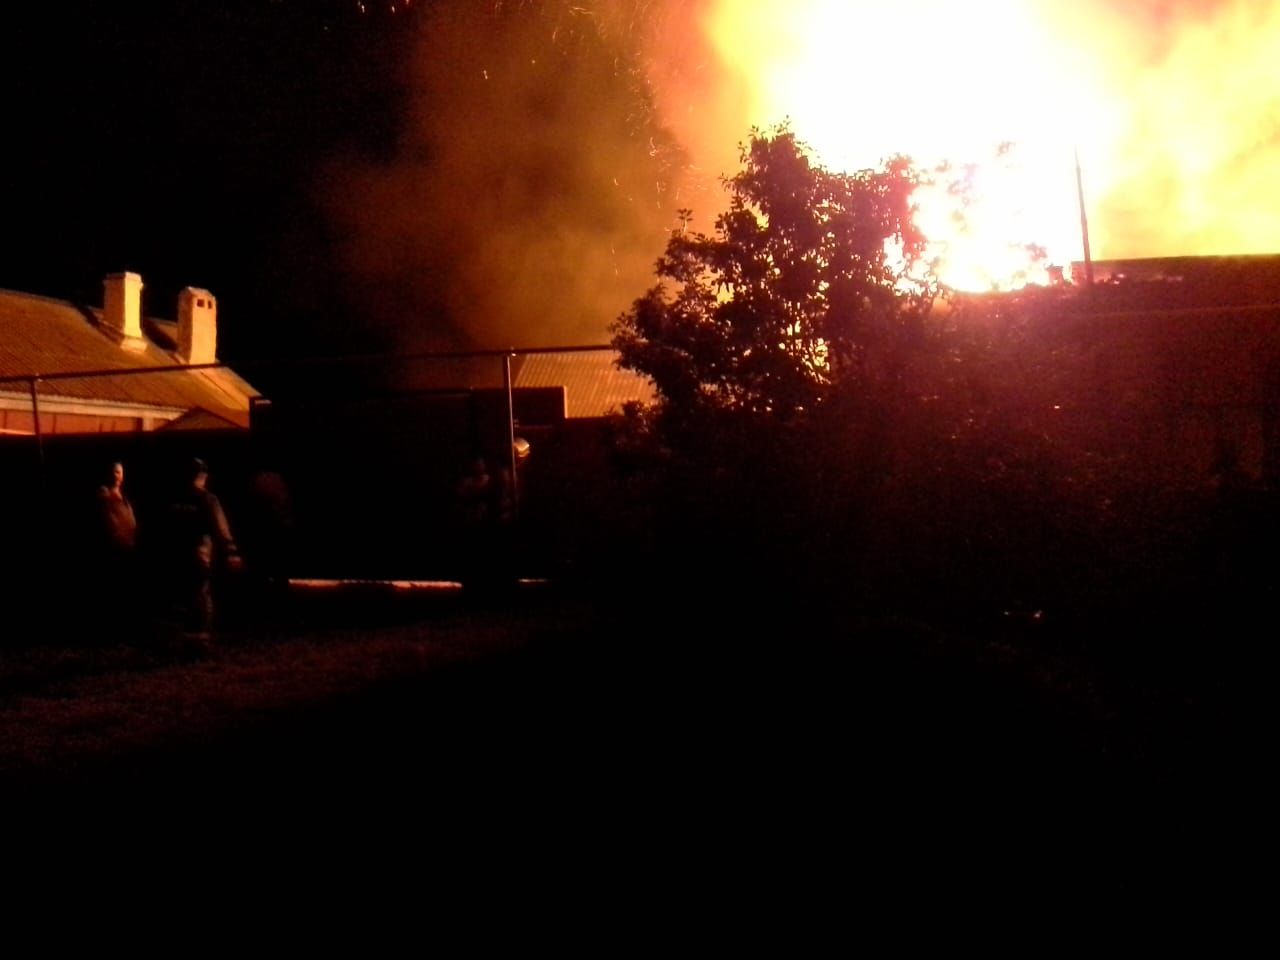 Сегодня ночью в деревне Черки-Кильдуразы горел дом (+ фото)